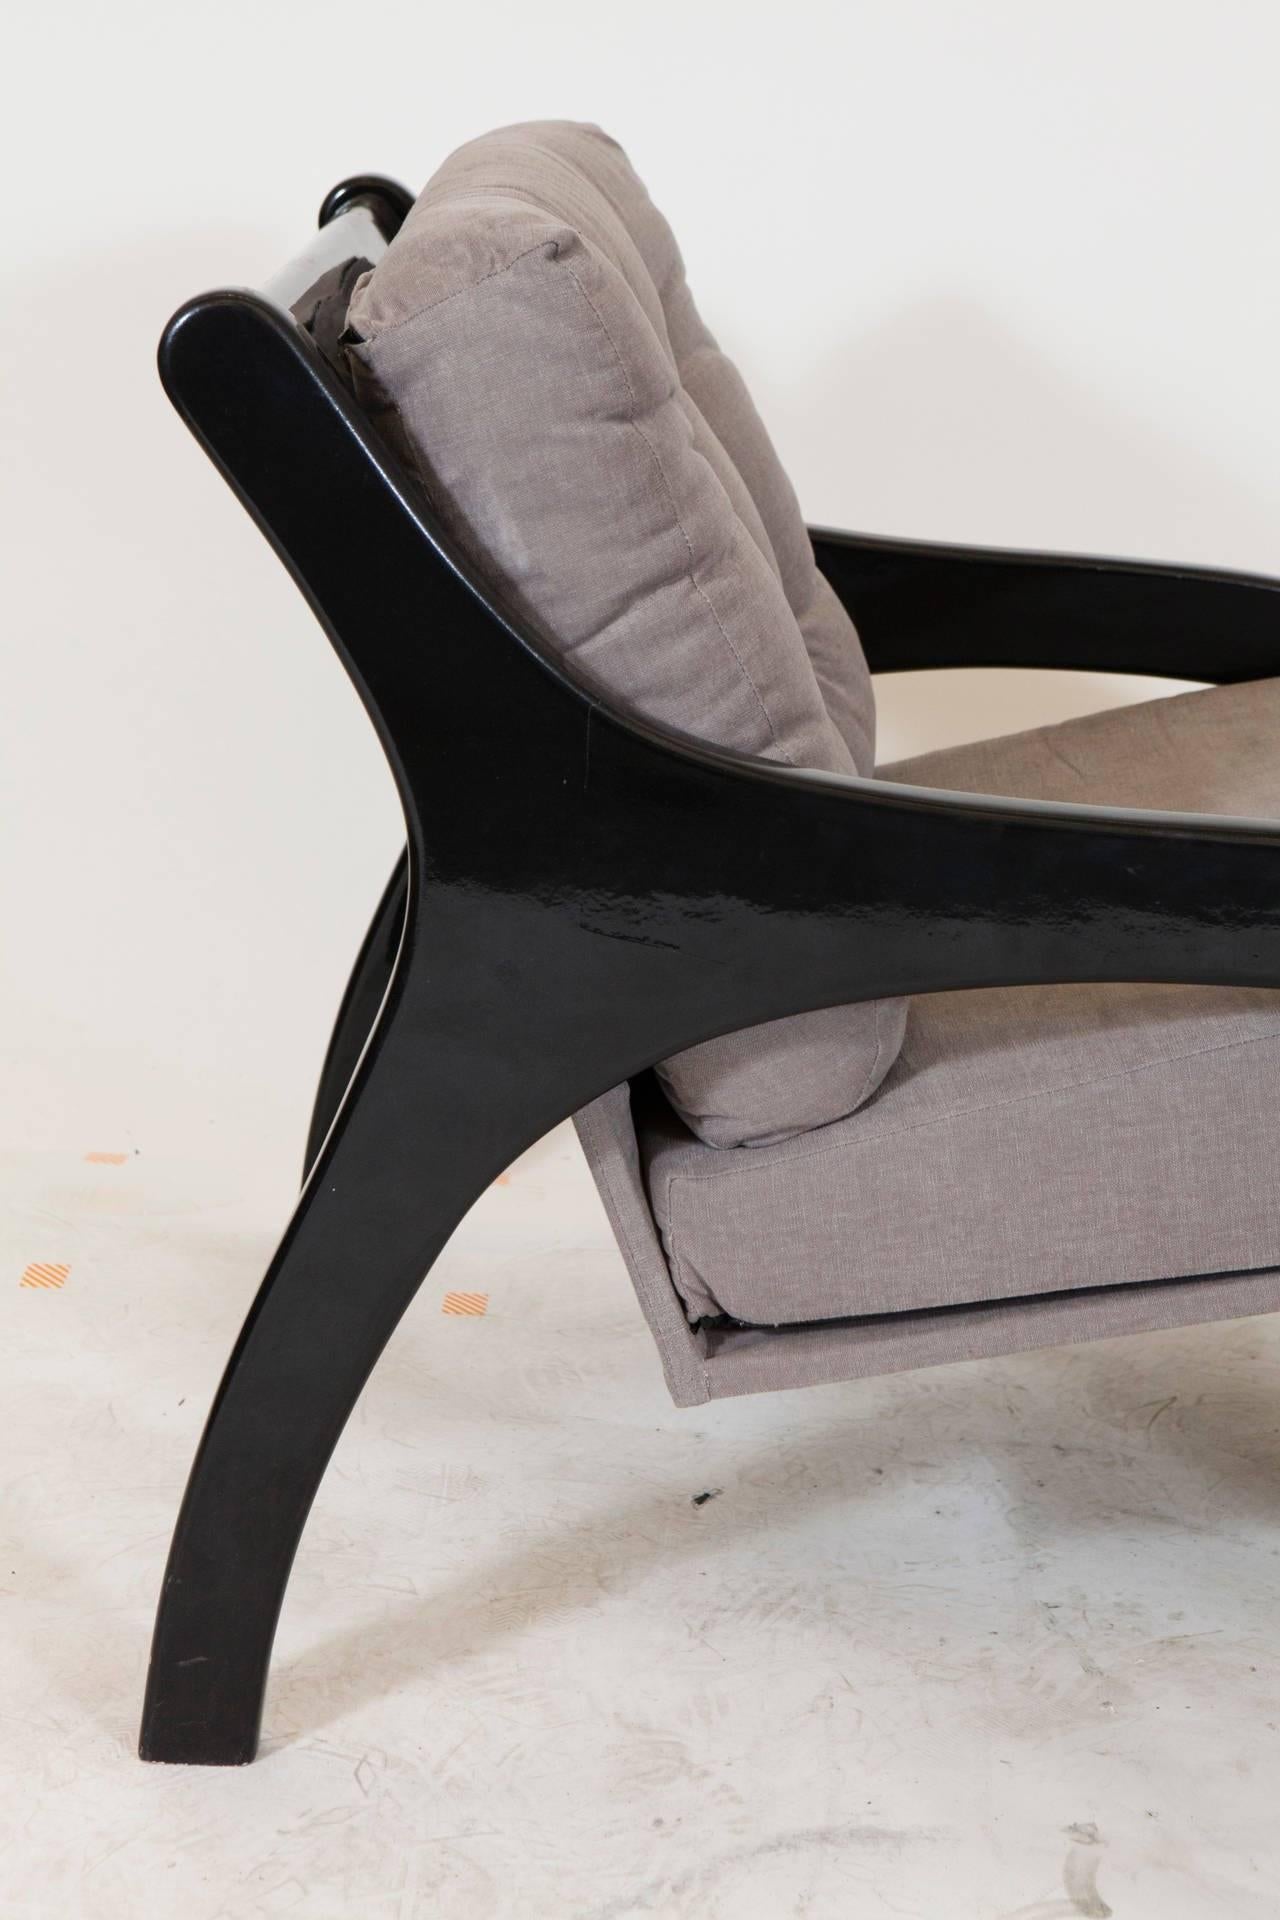 Il s'agit d'une très belle paire de fauteuils minimalistes de style midcentury en laque noire ou en bois avec une tapisserie grise à coussins libres incroyablement bien conservée.